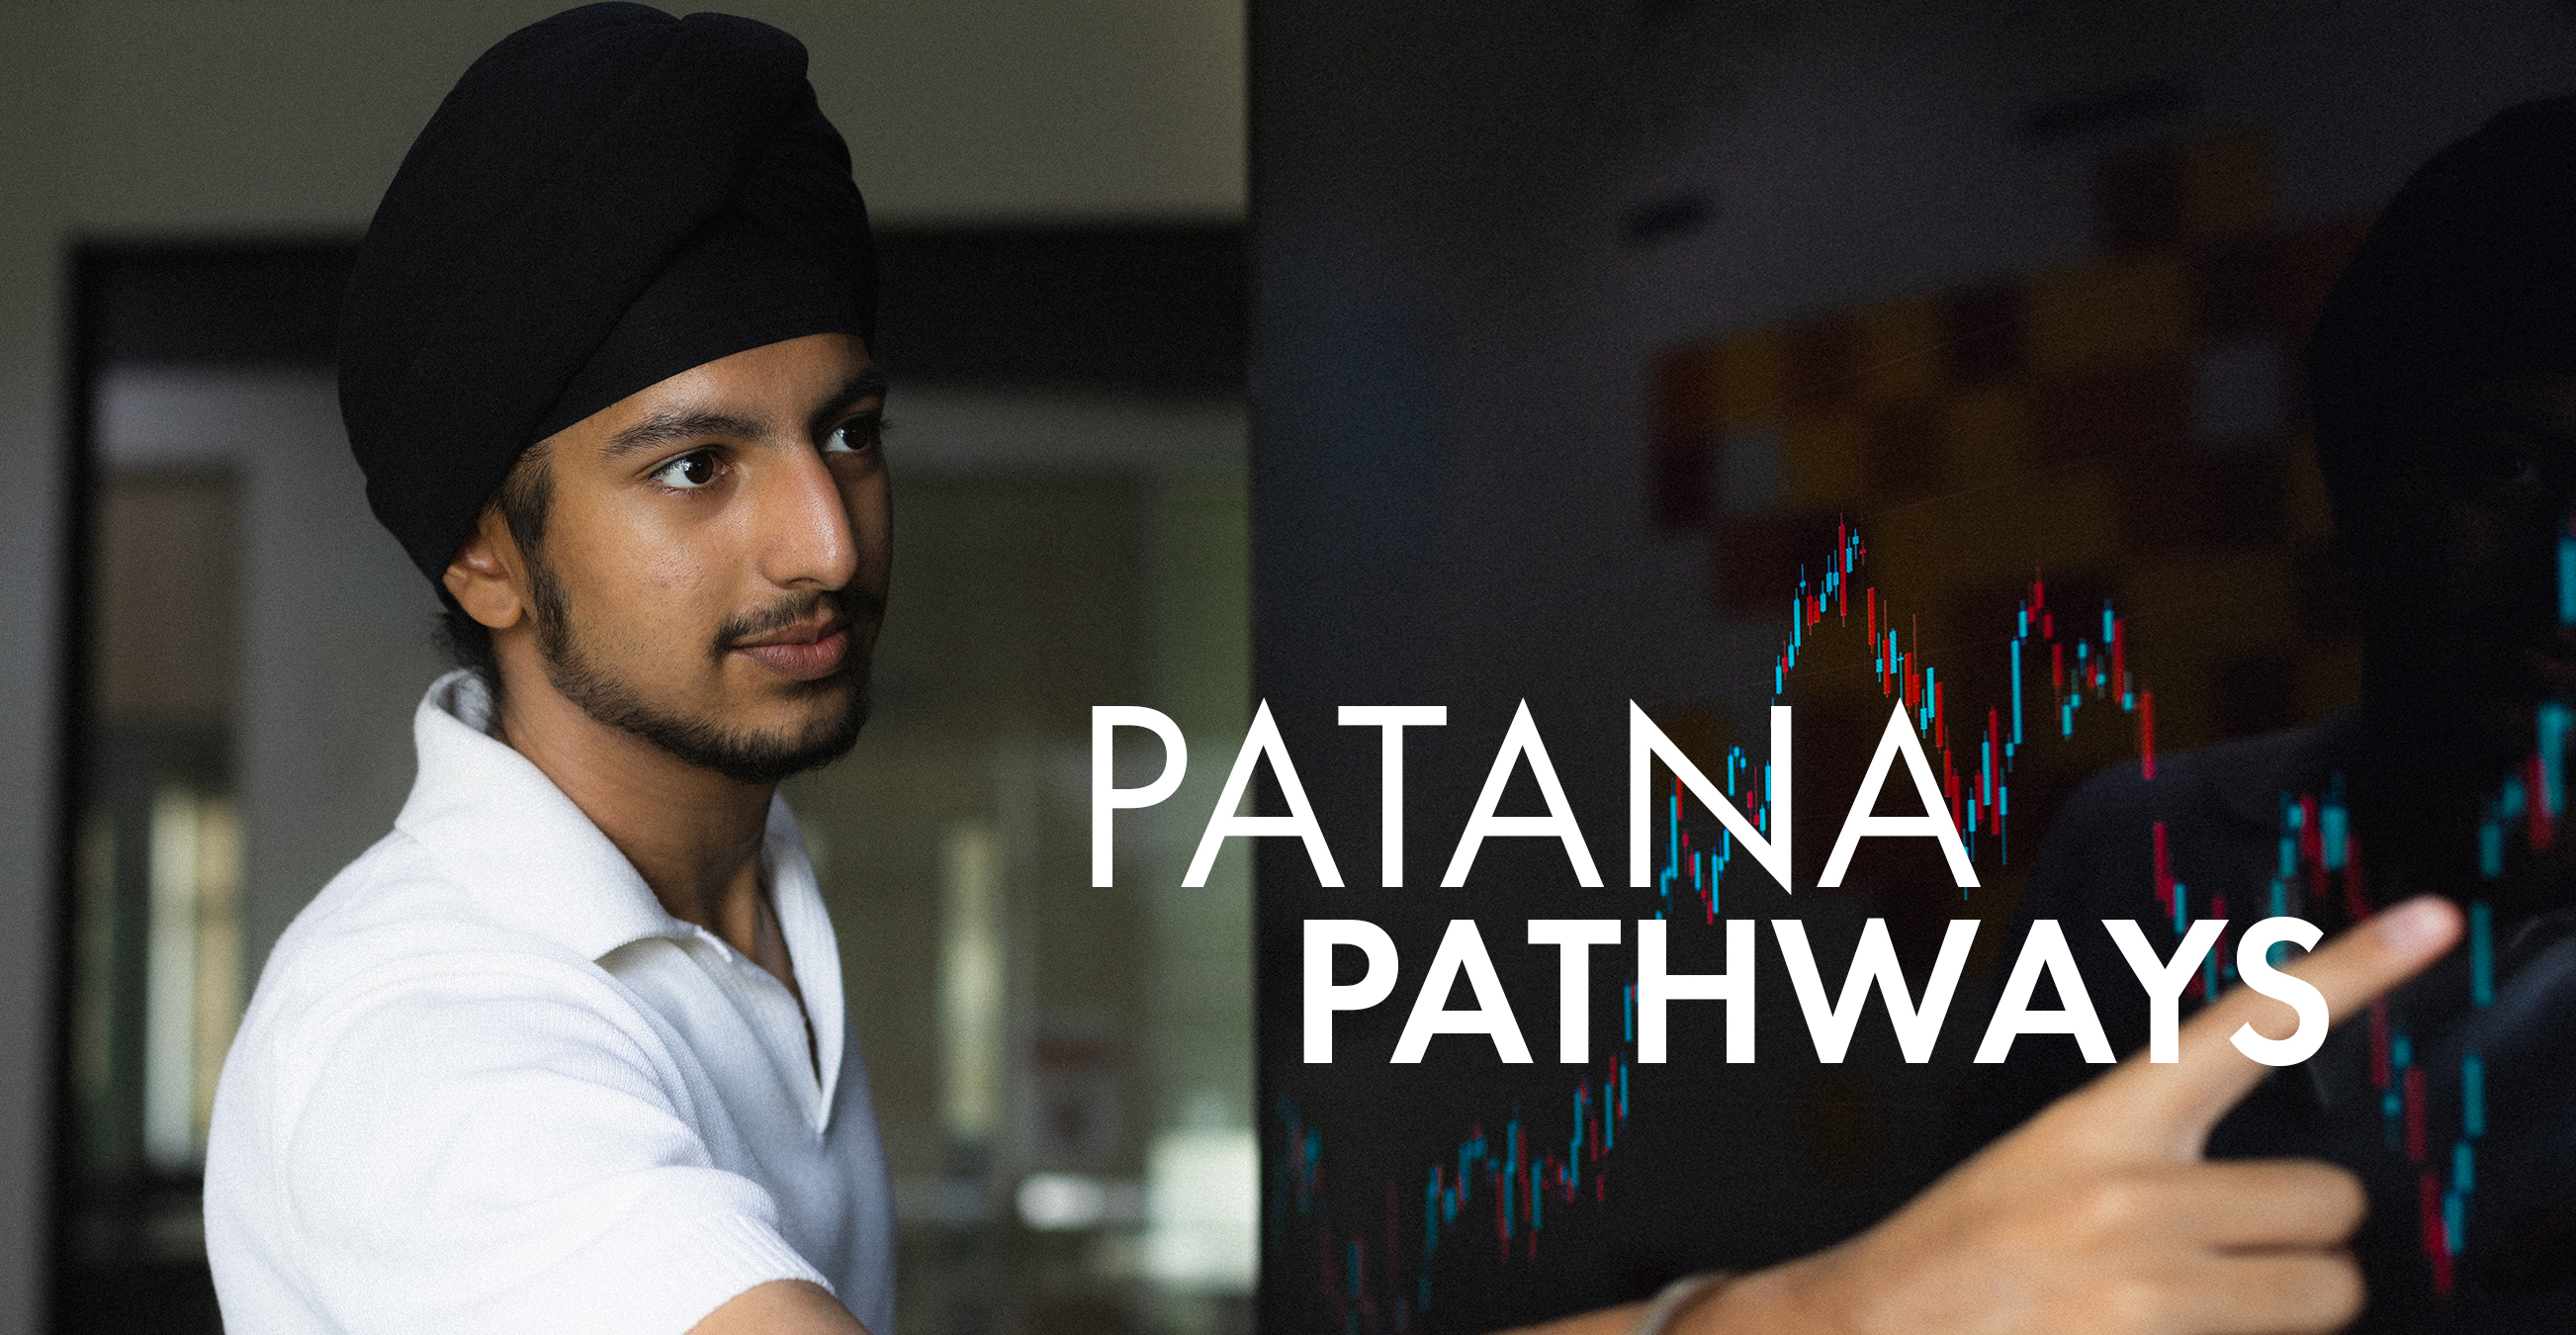 Patana Pathways – Krish